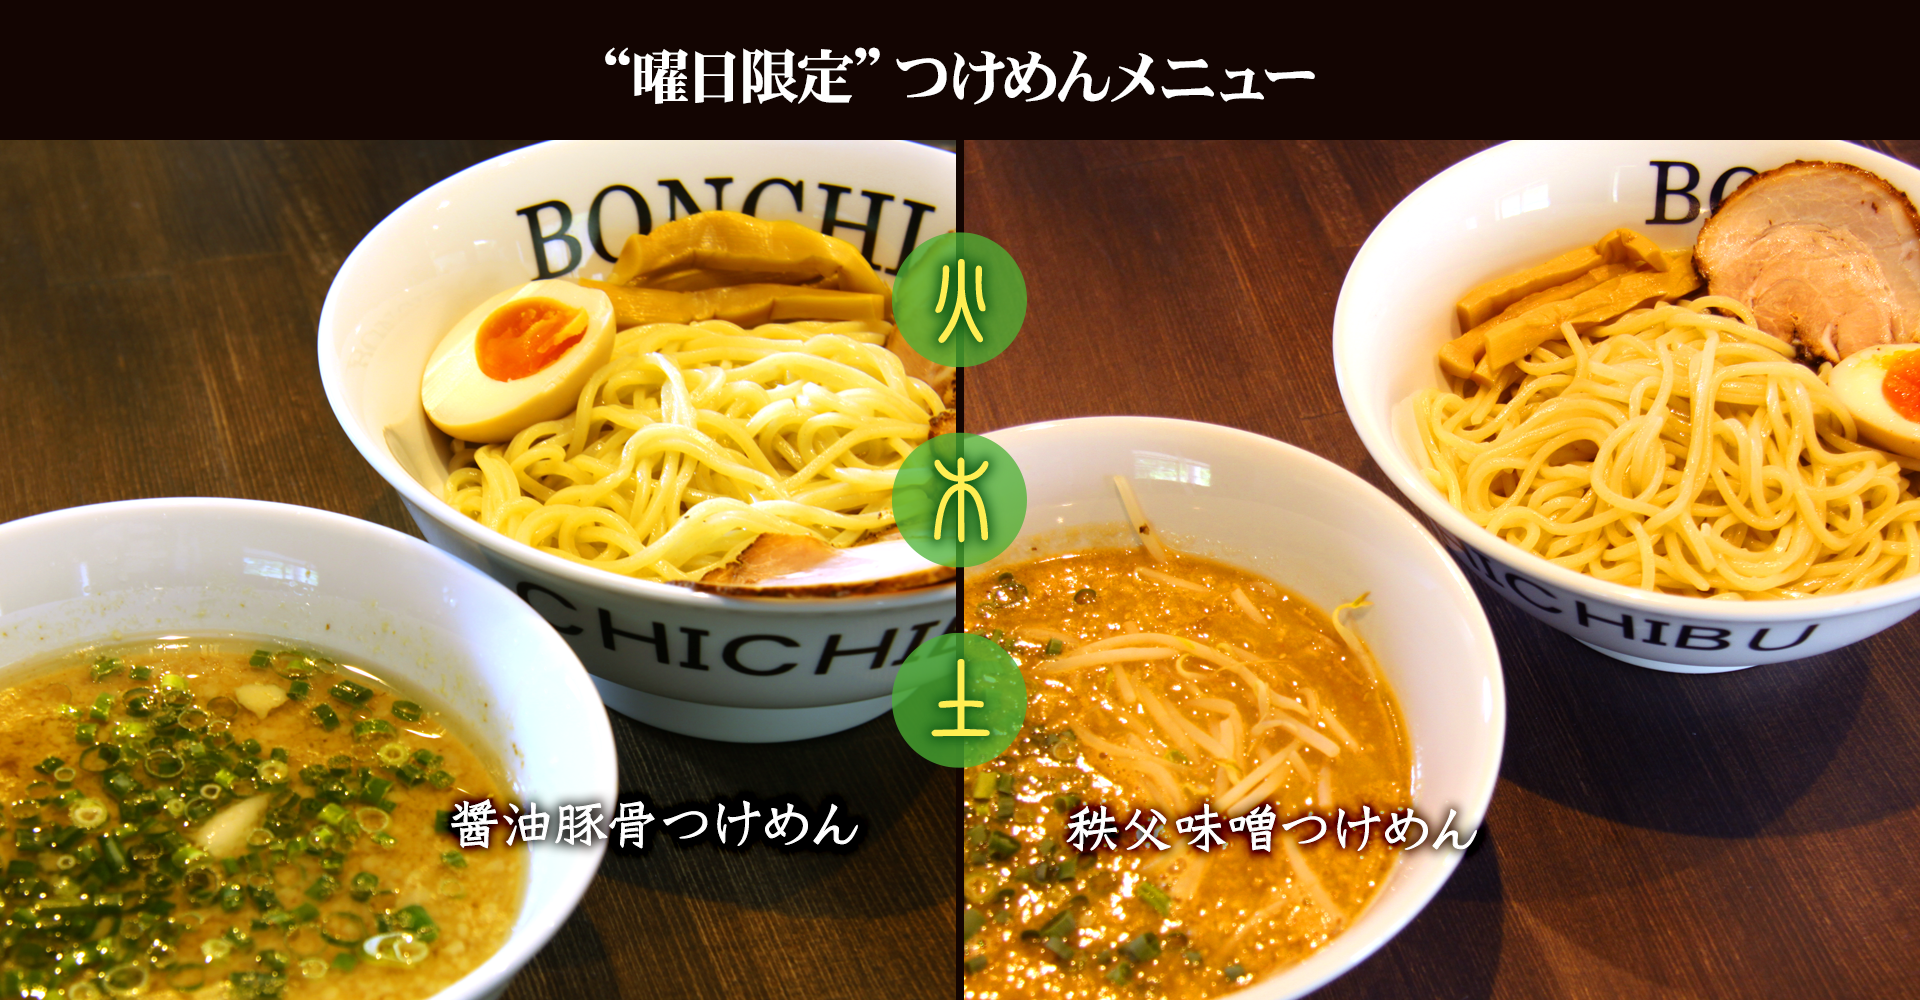 麺屋 BONCHI